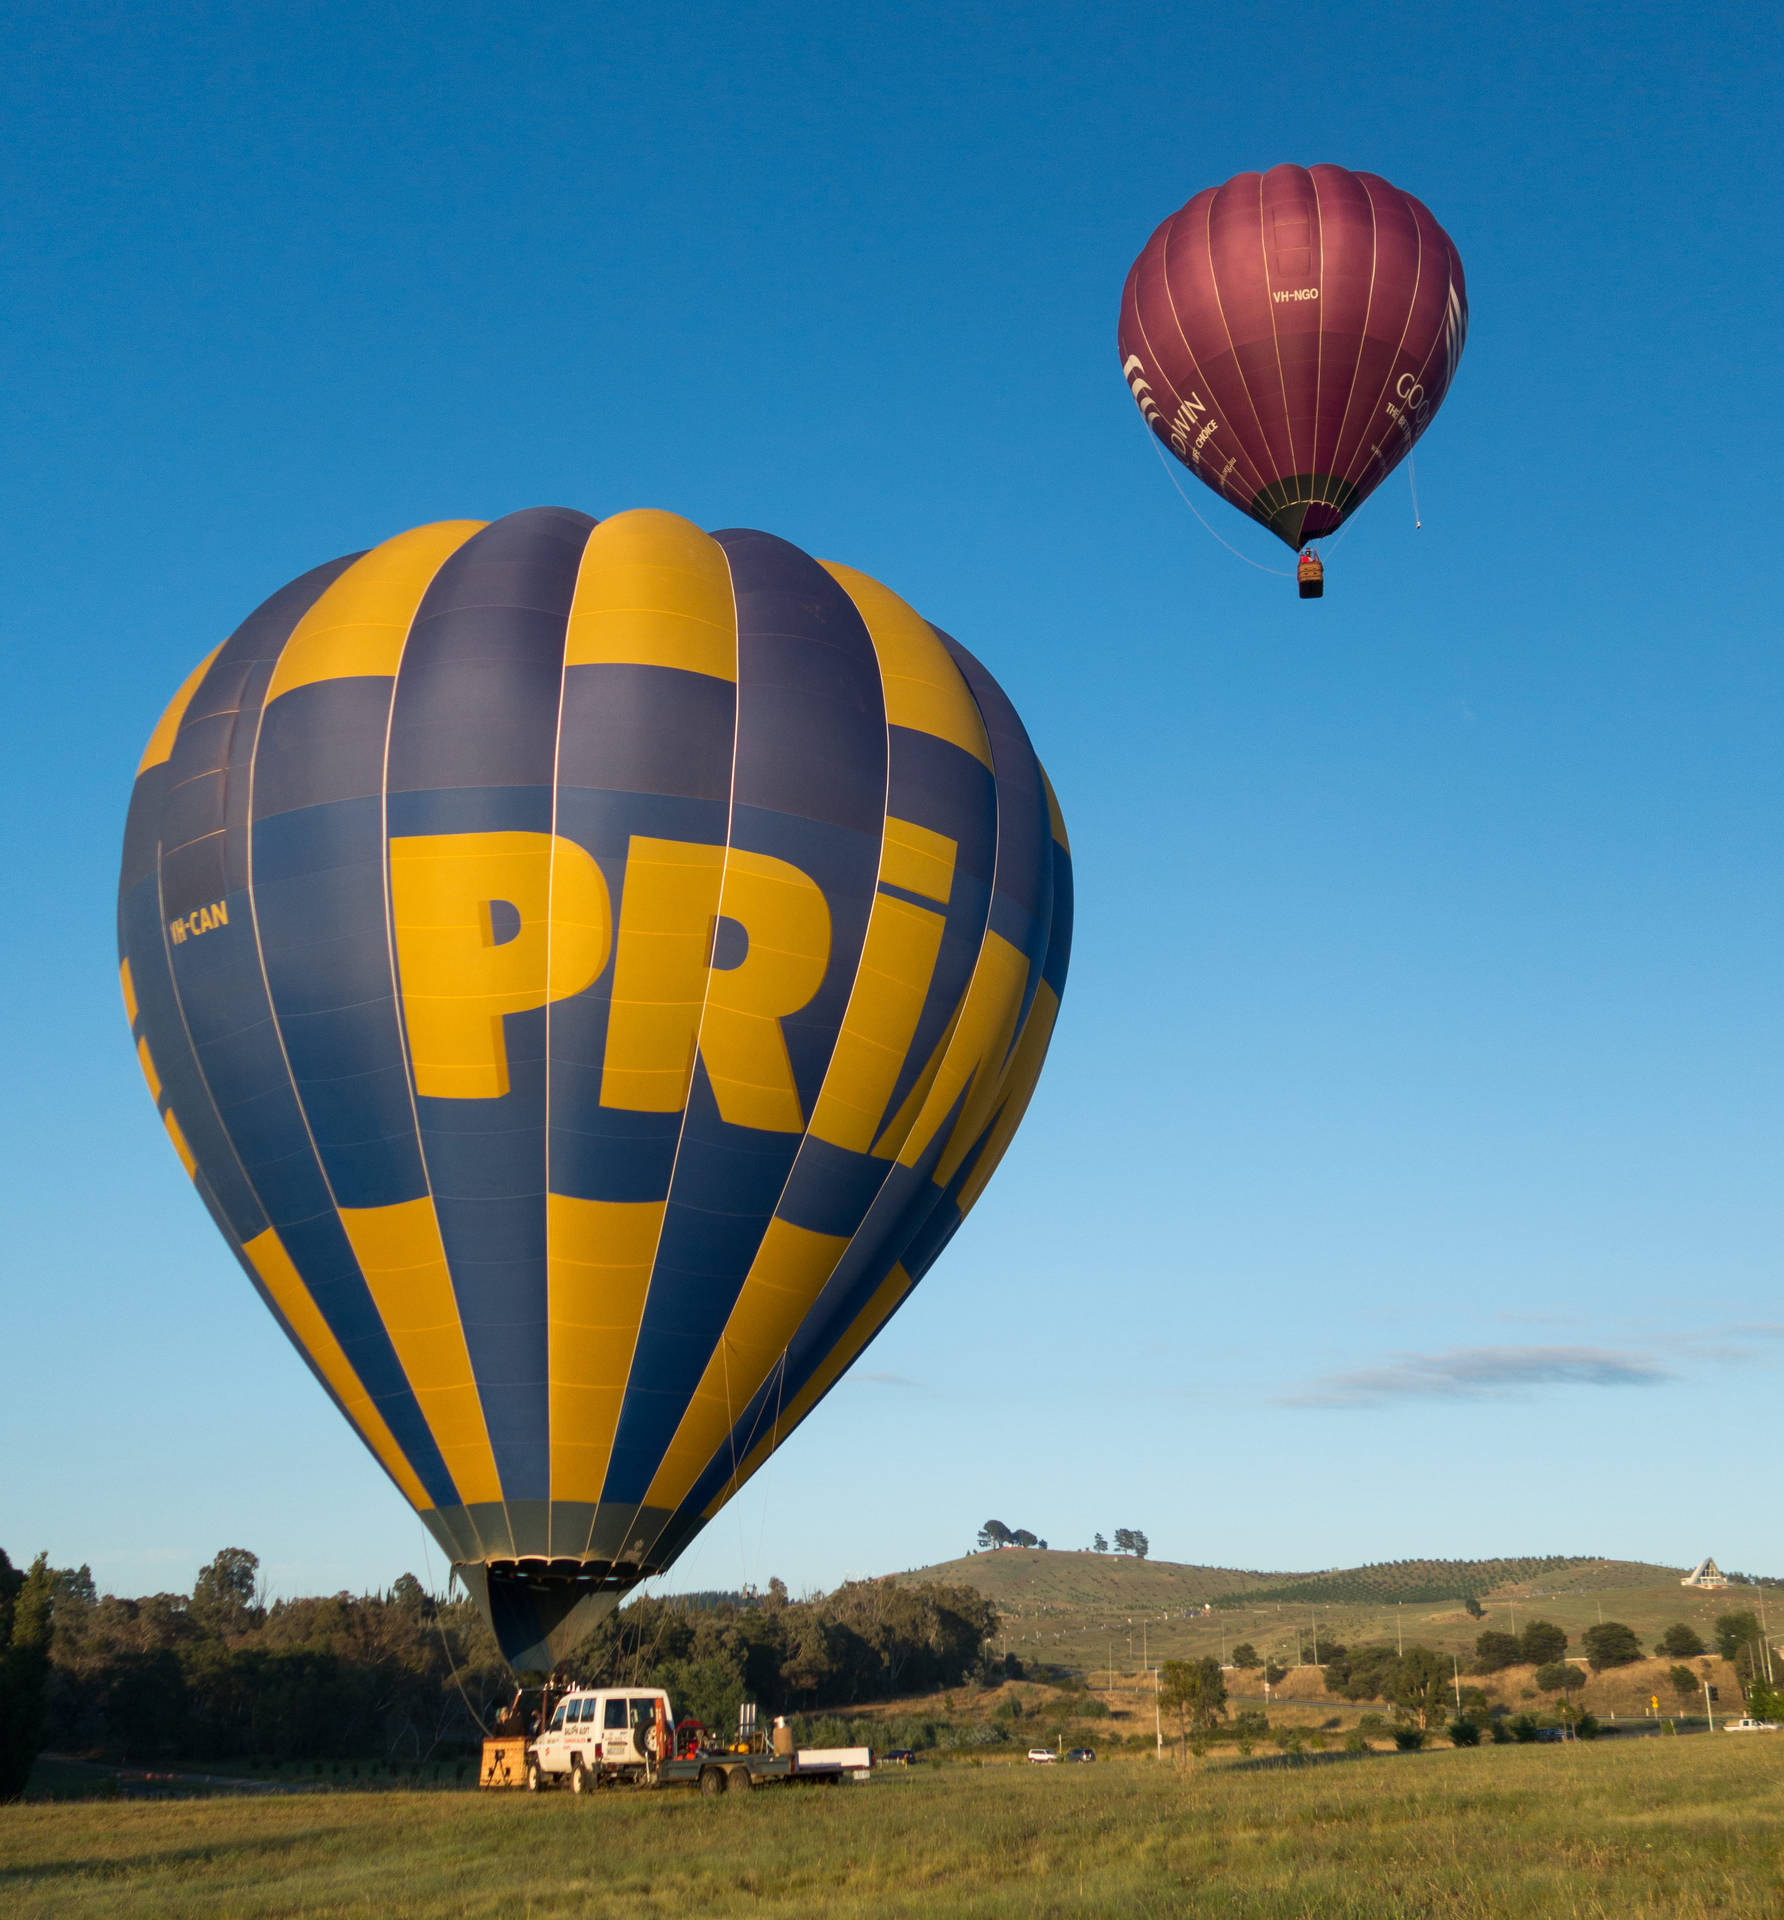 Balõesde Ar Quente Em Canberra. Papel de Parede